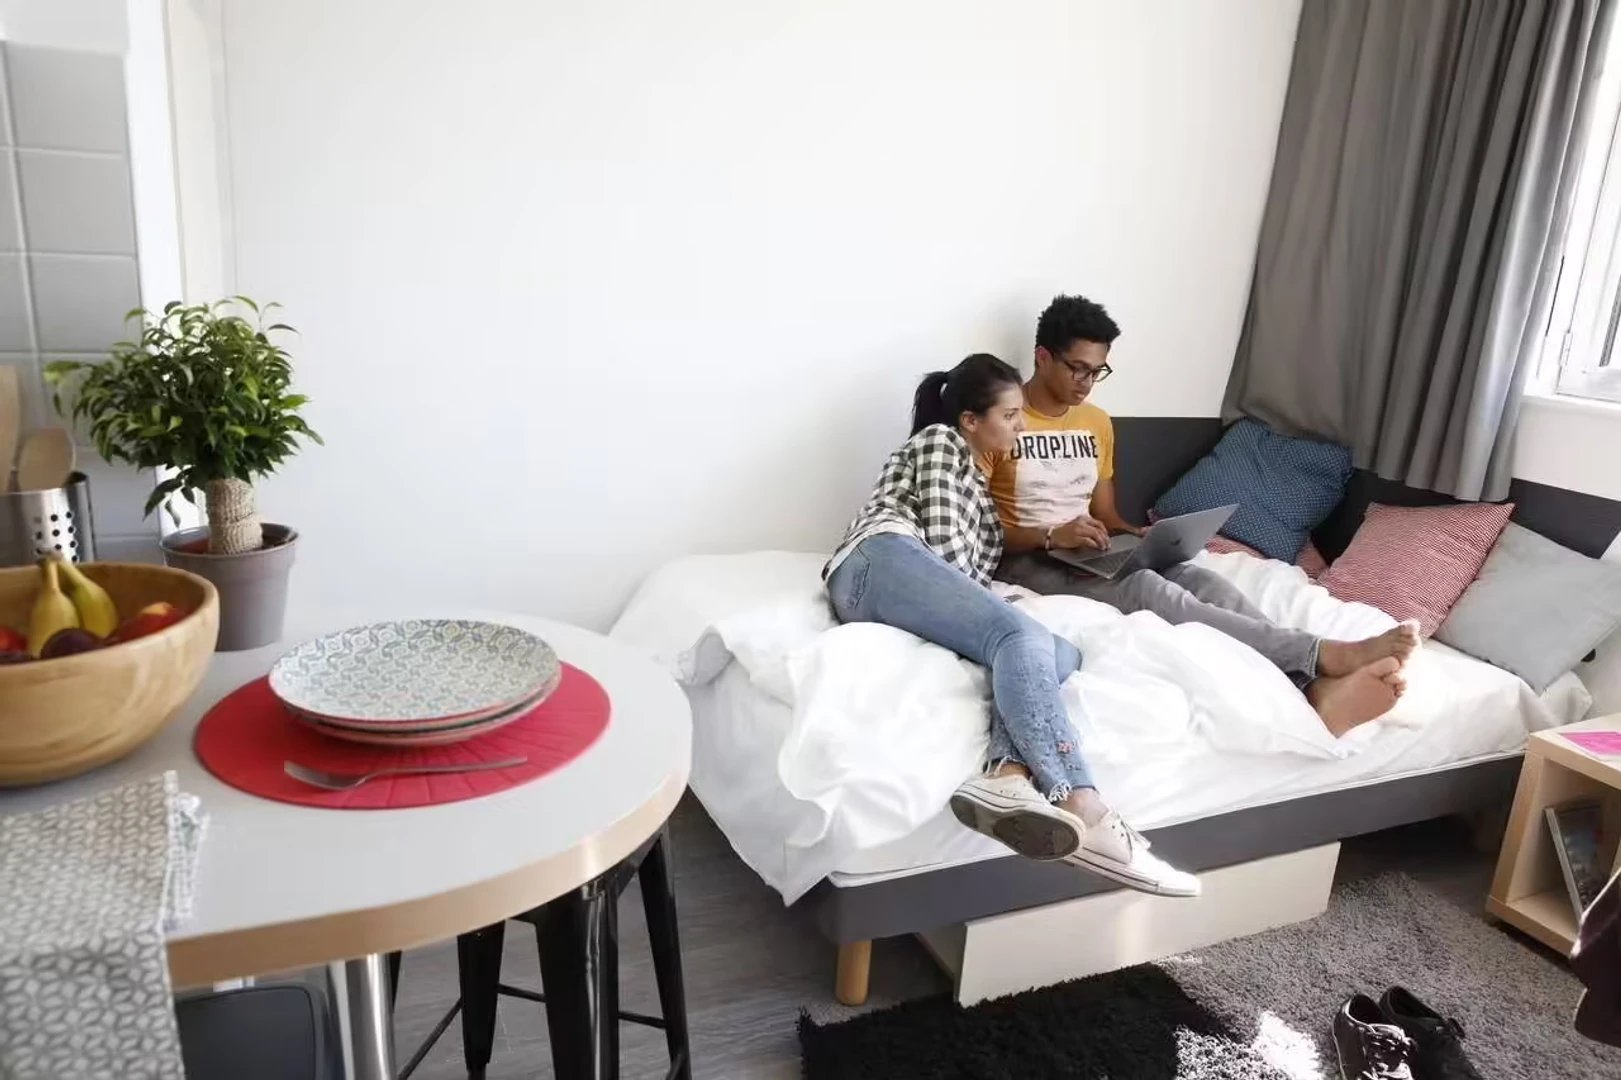 Quarto para alugar com cama de casal em Rennes